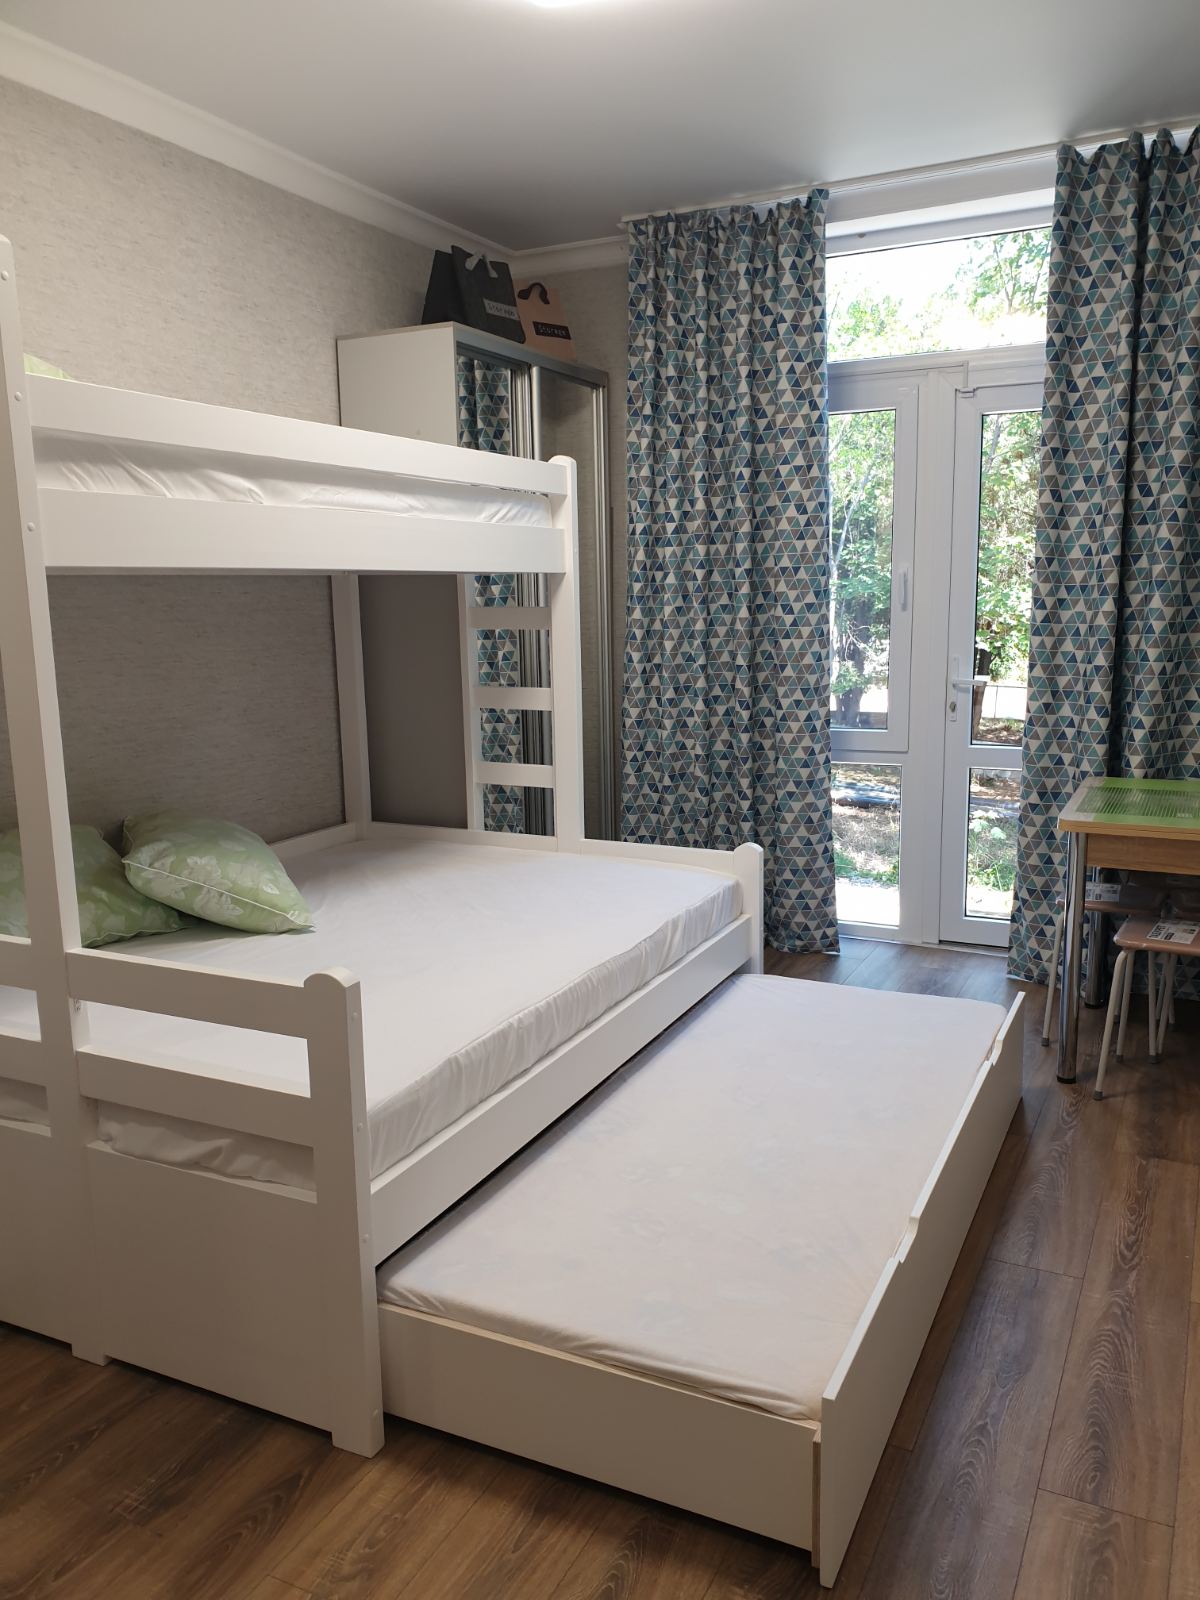 Двухъярусная кровать Юность с дополнительным спальным местом Цвет Белая эмаль